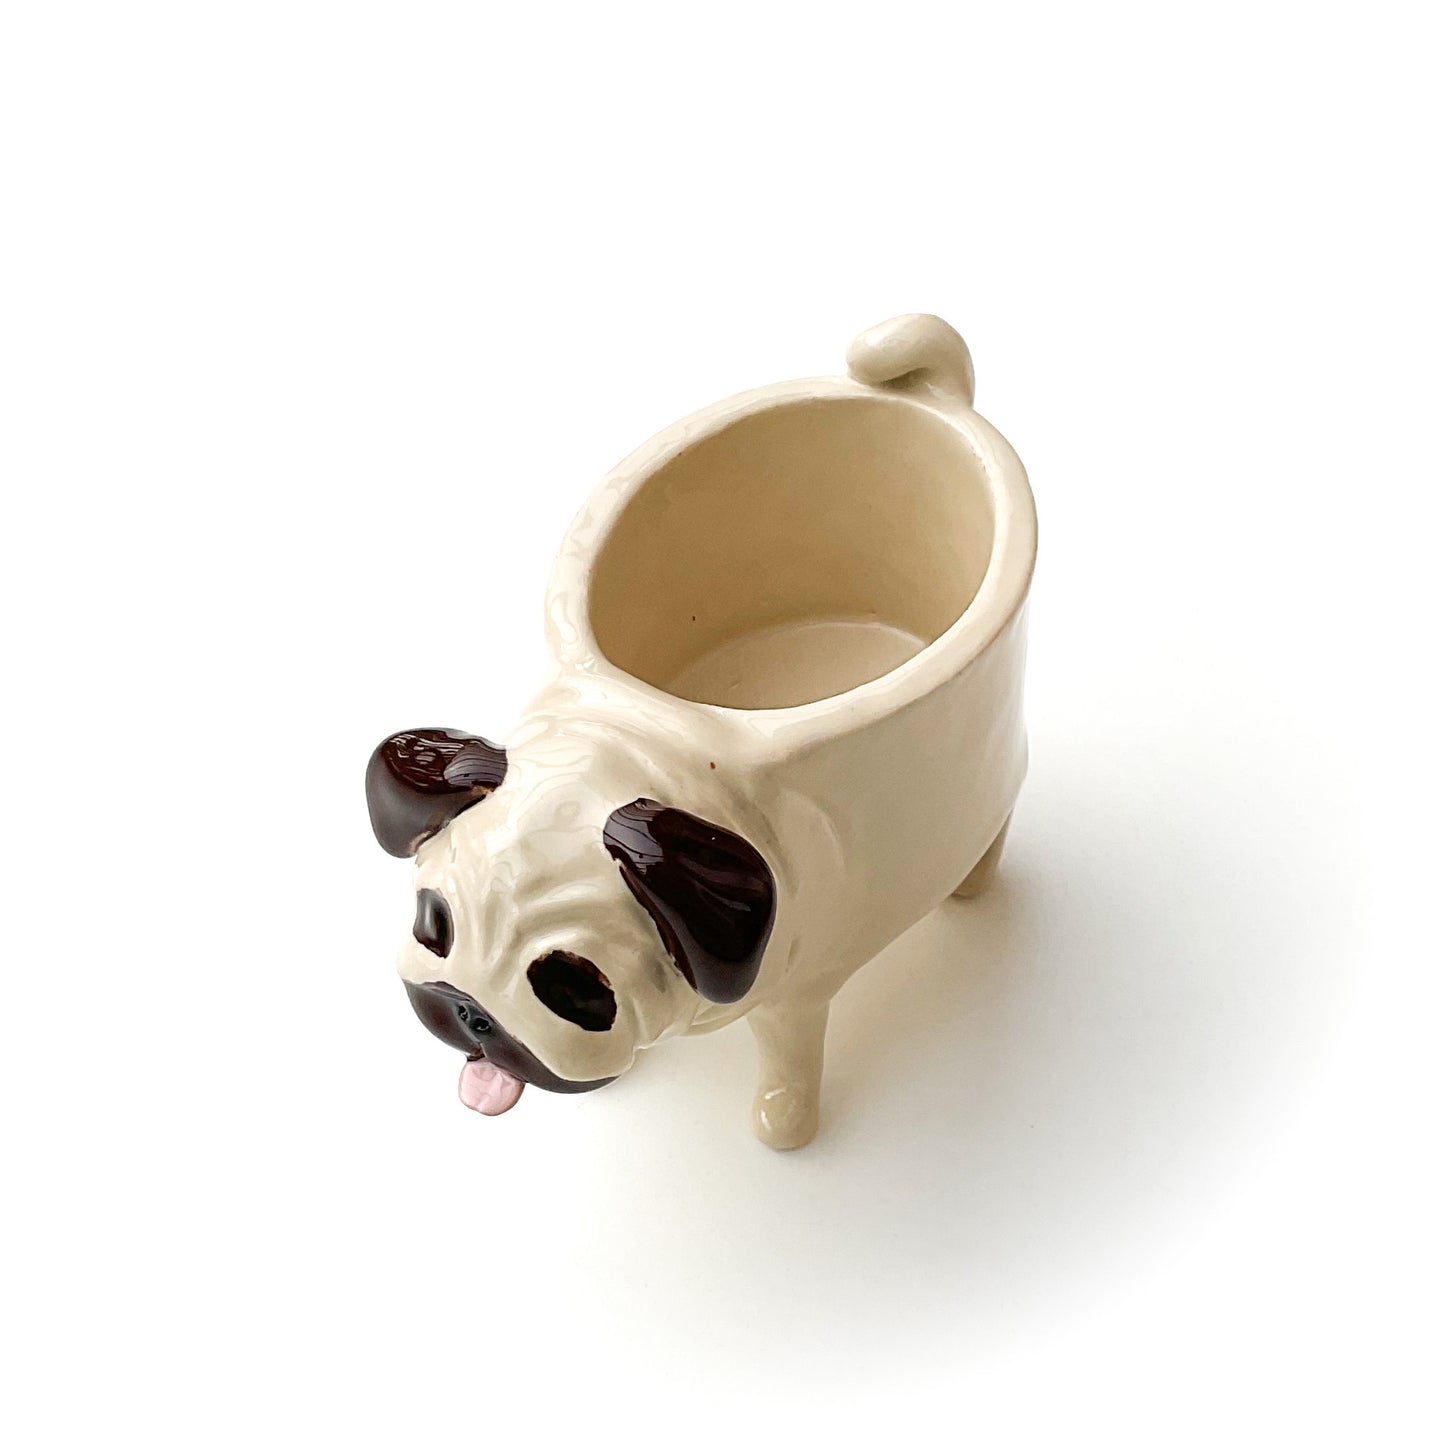 Pug Dog Planter - Ceramic Dog Plant Pot